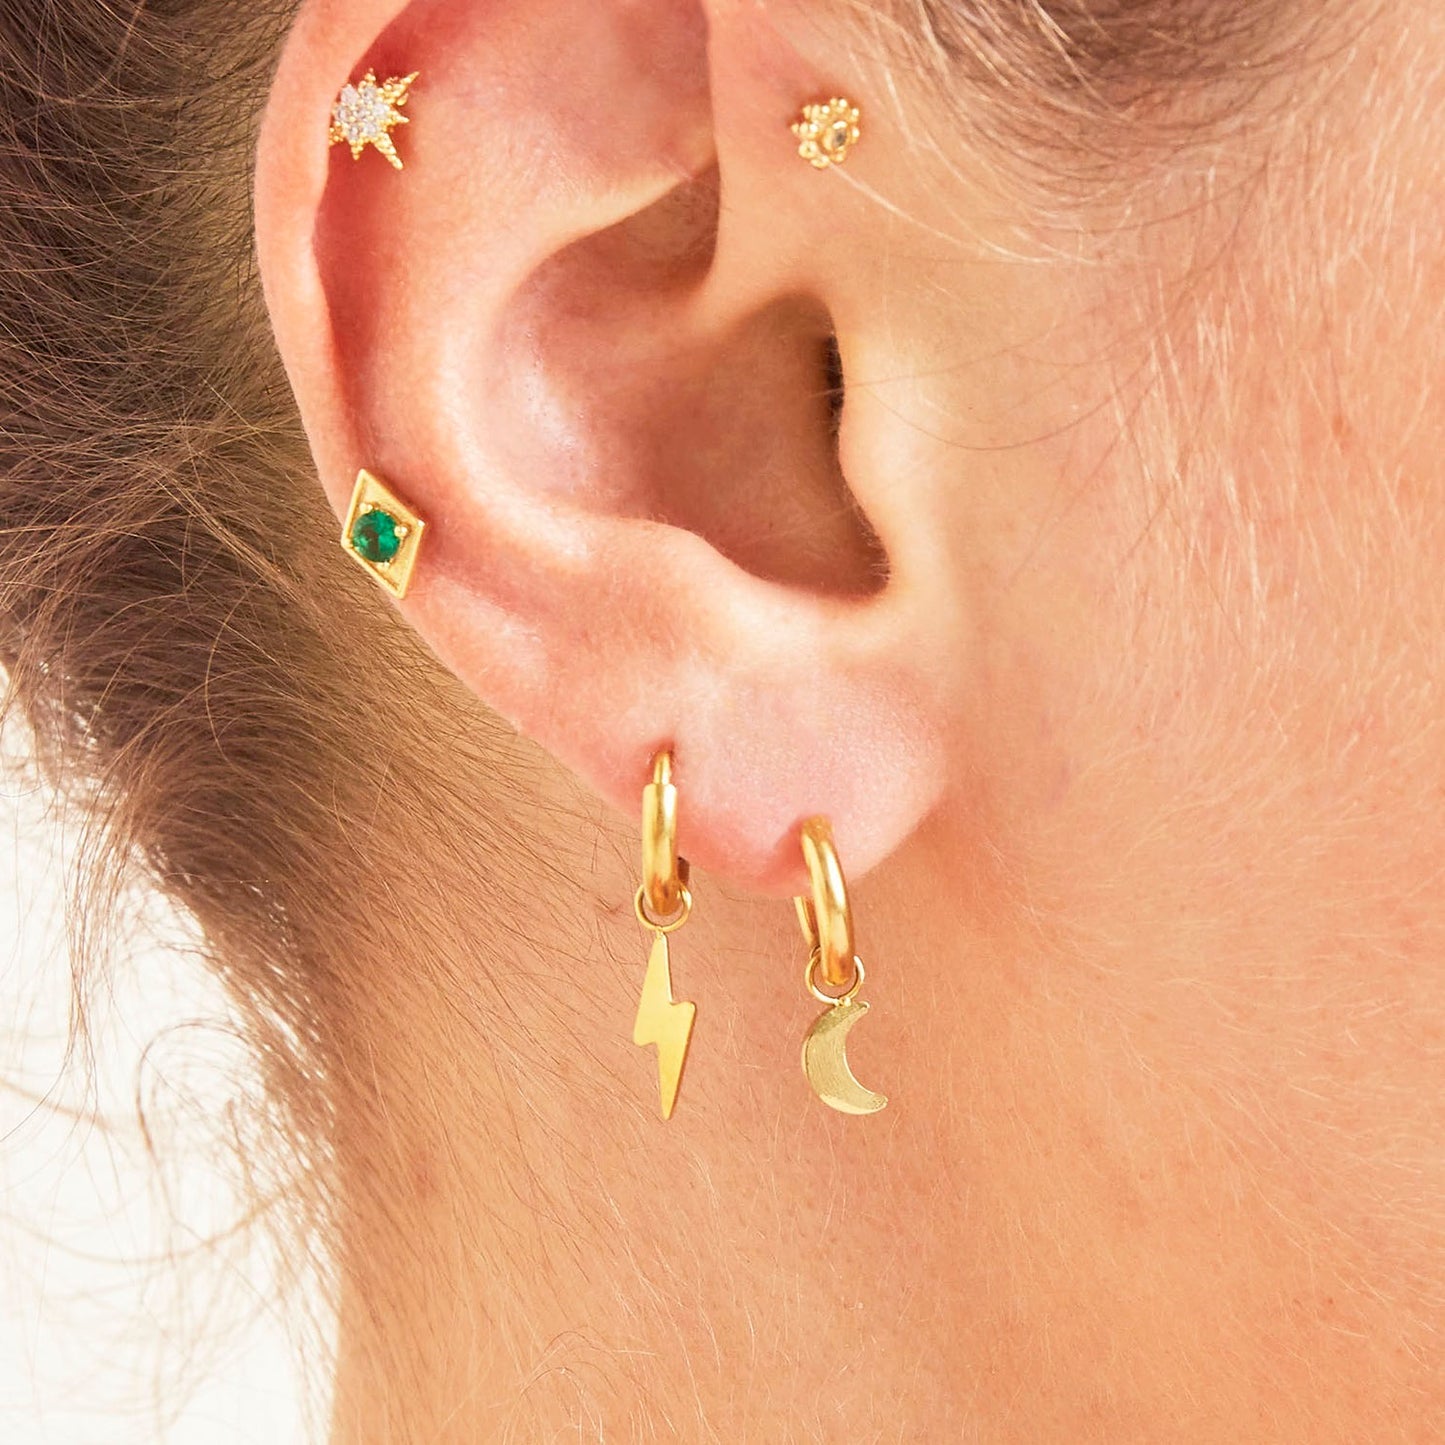 Earparty goud met verschillende stainless steel oorbellen, shop de oorbellen nu op www.jenelry.com